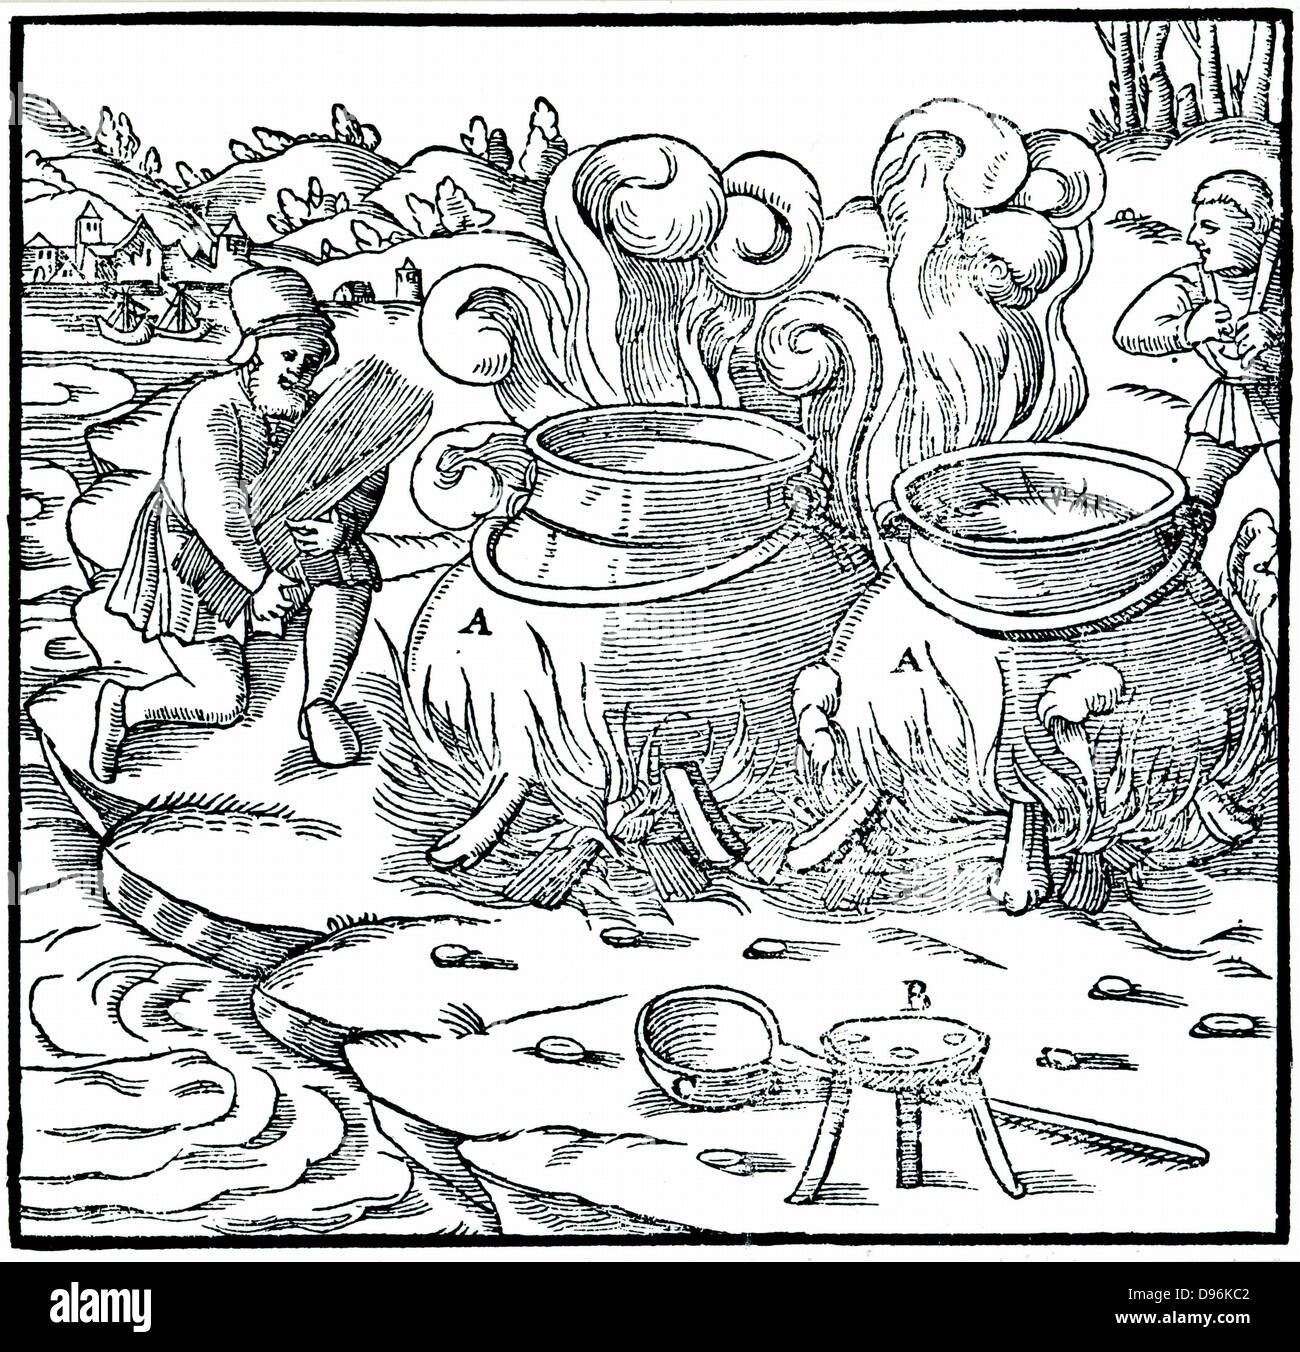 Evaporare l'acqua di mare in vasi di ferro per ottenere il sale. La paglia venga utilizzato come carburante. Da Agricola "De re metallica", Basilea, 1556. Xilografia Foto Stock